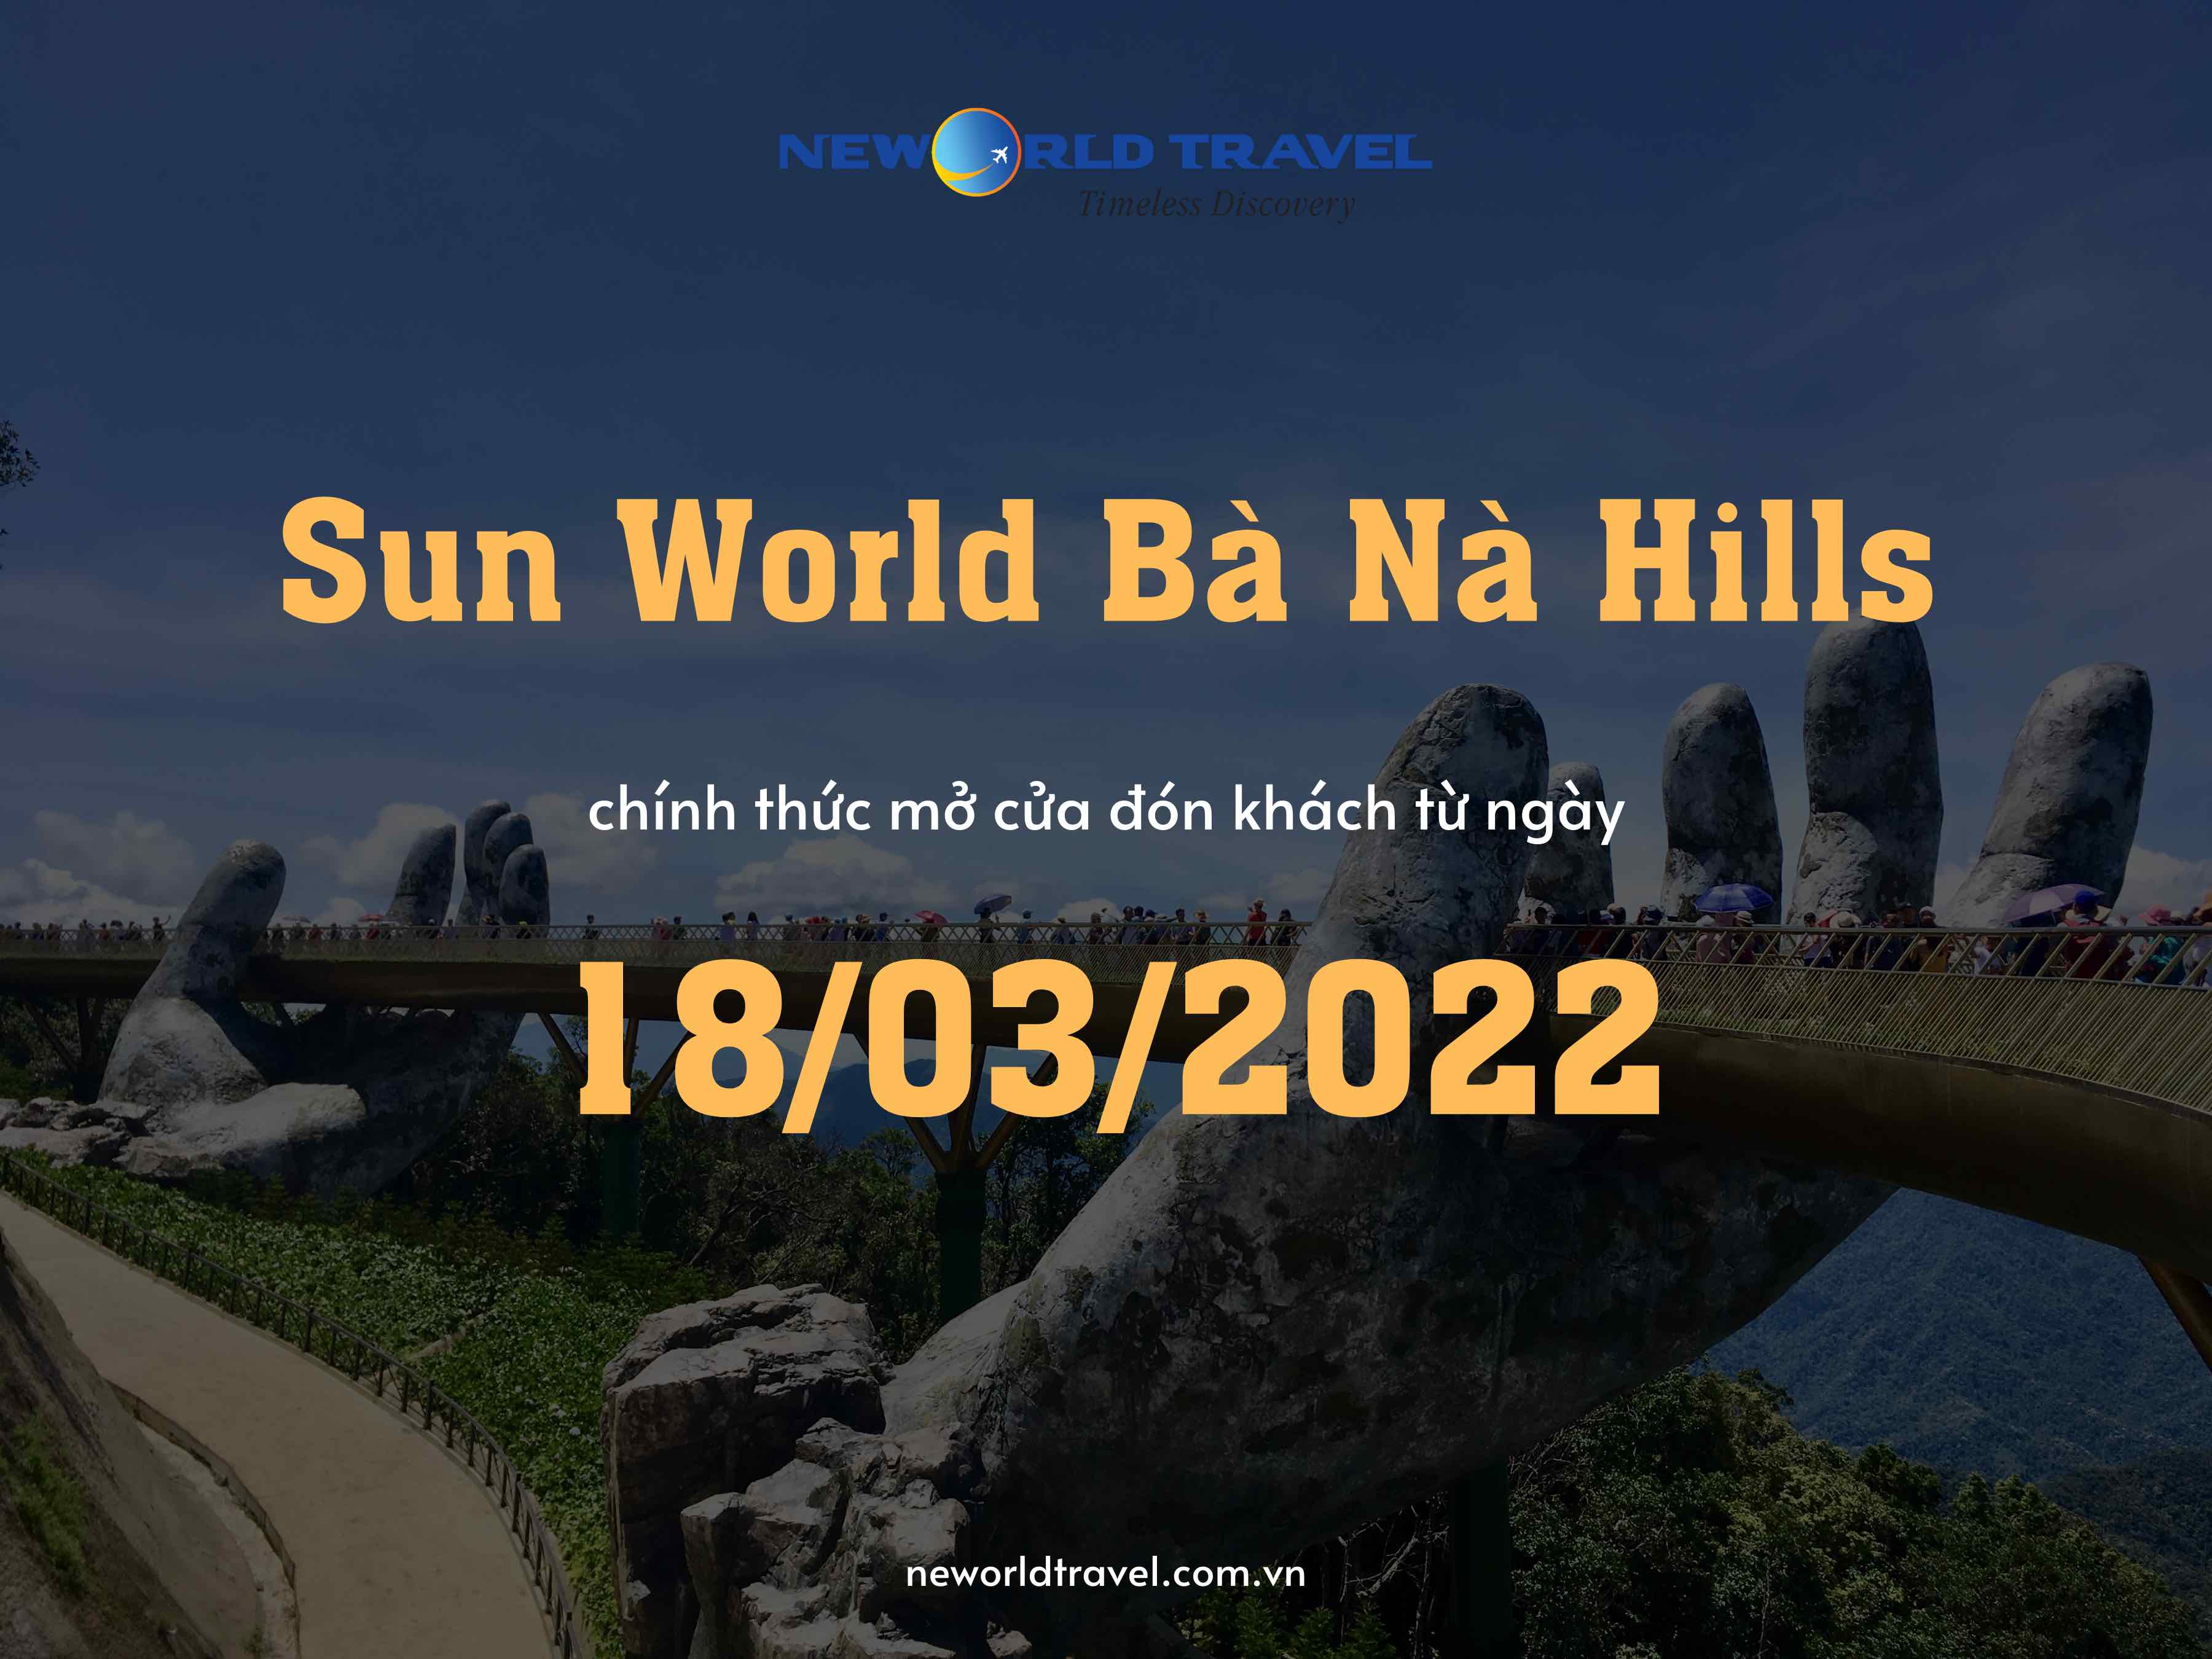 Sun World Bà Nà Hills chính thức mở cửa đón khách bắt đầu từ ngày 18/03/2022